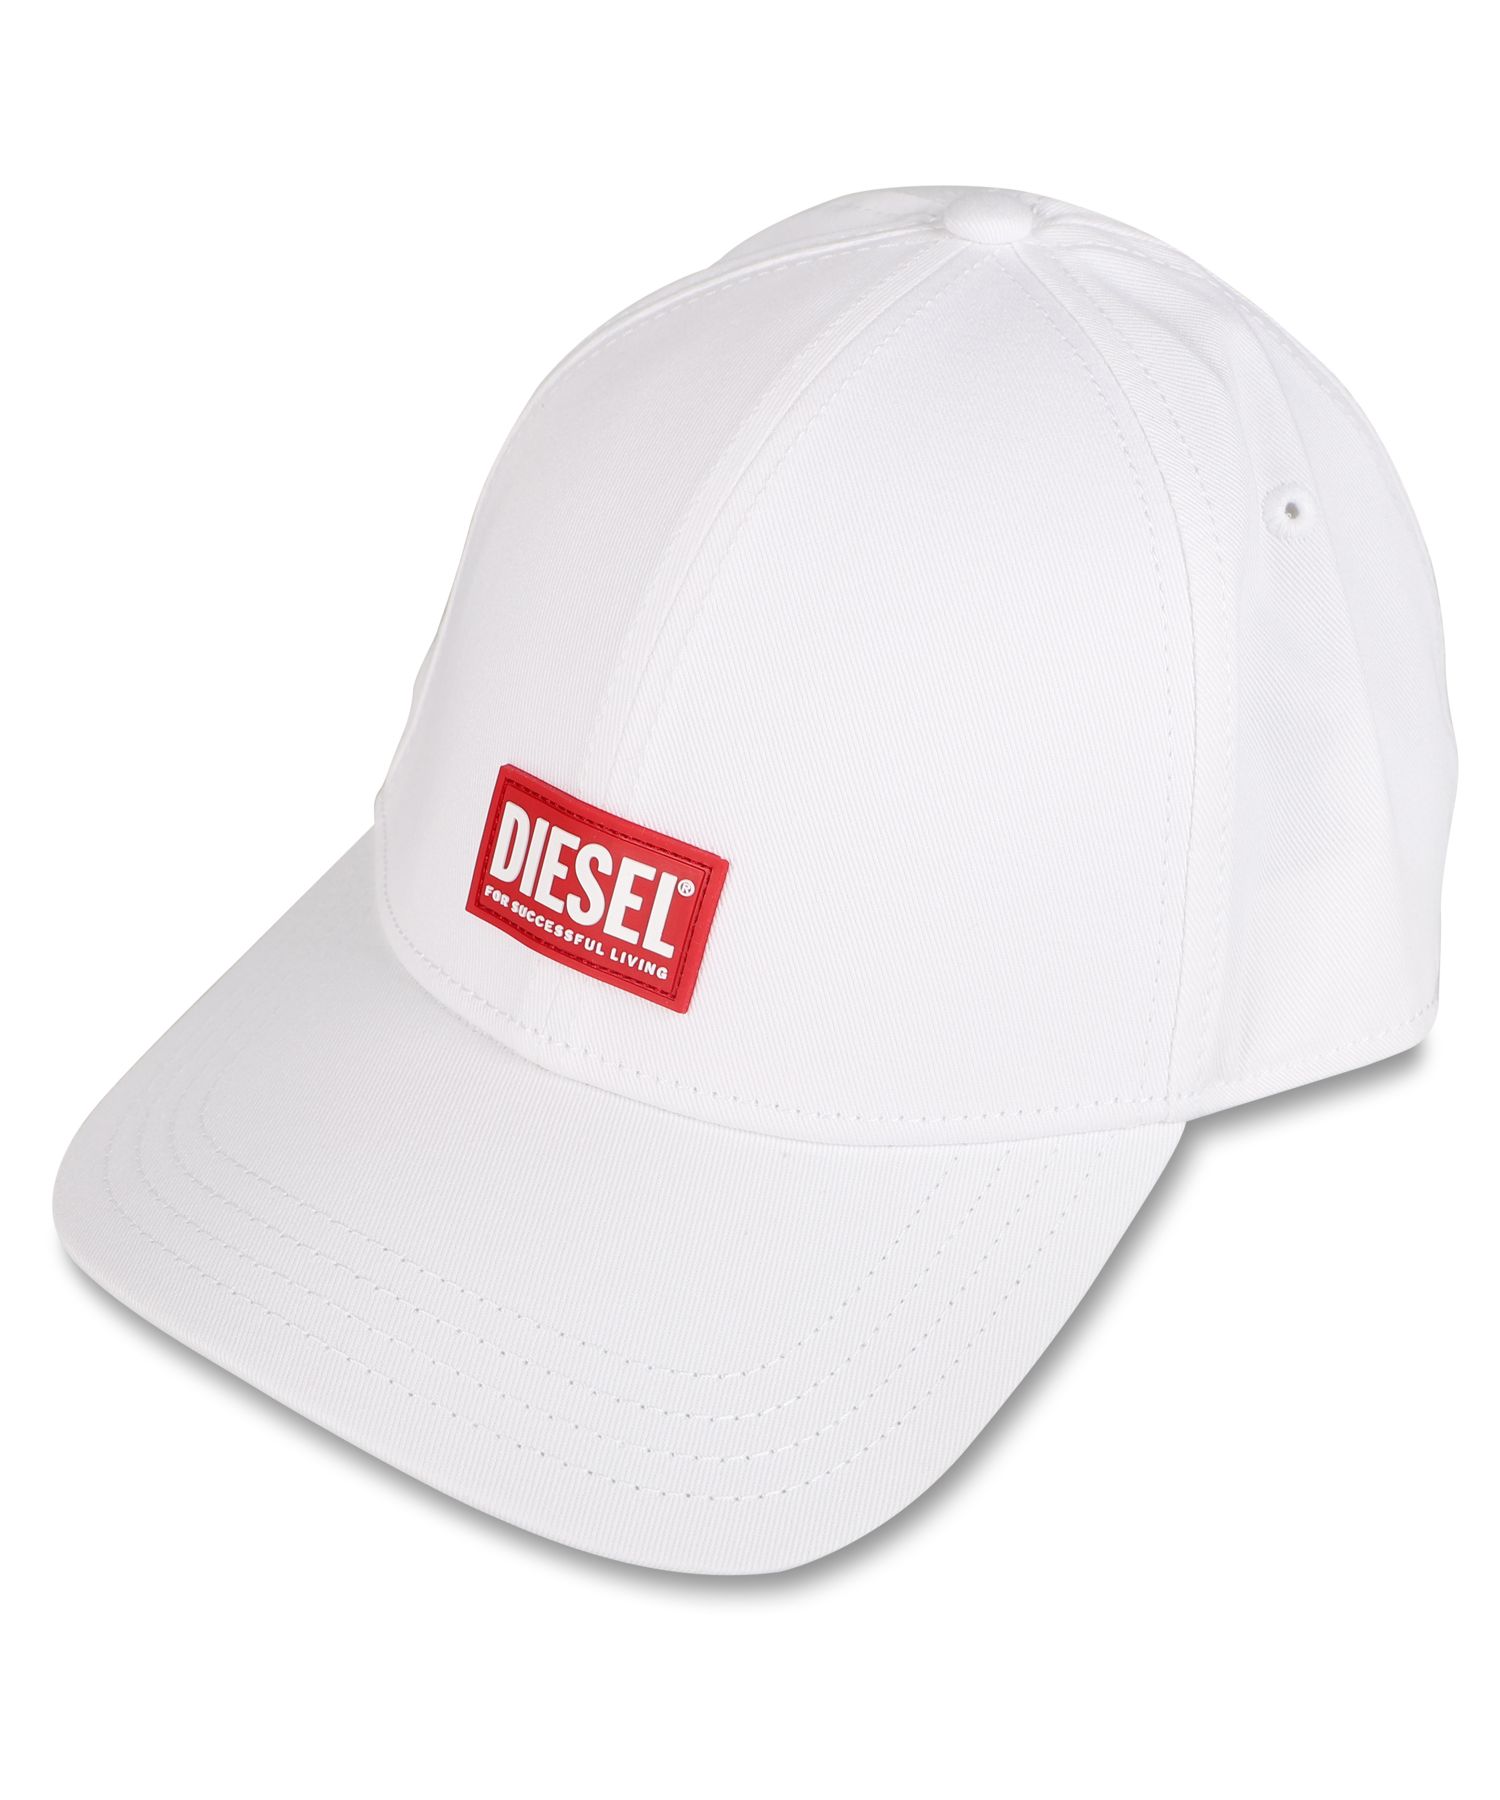 ディーゼル DIESEL キャップ 帽子 ベースボールキャップ メンズ